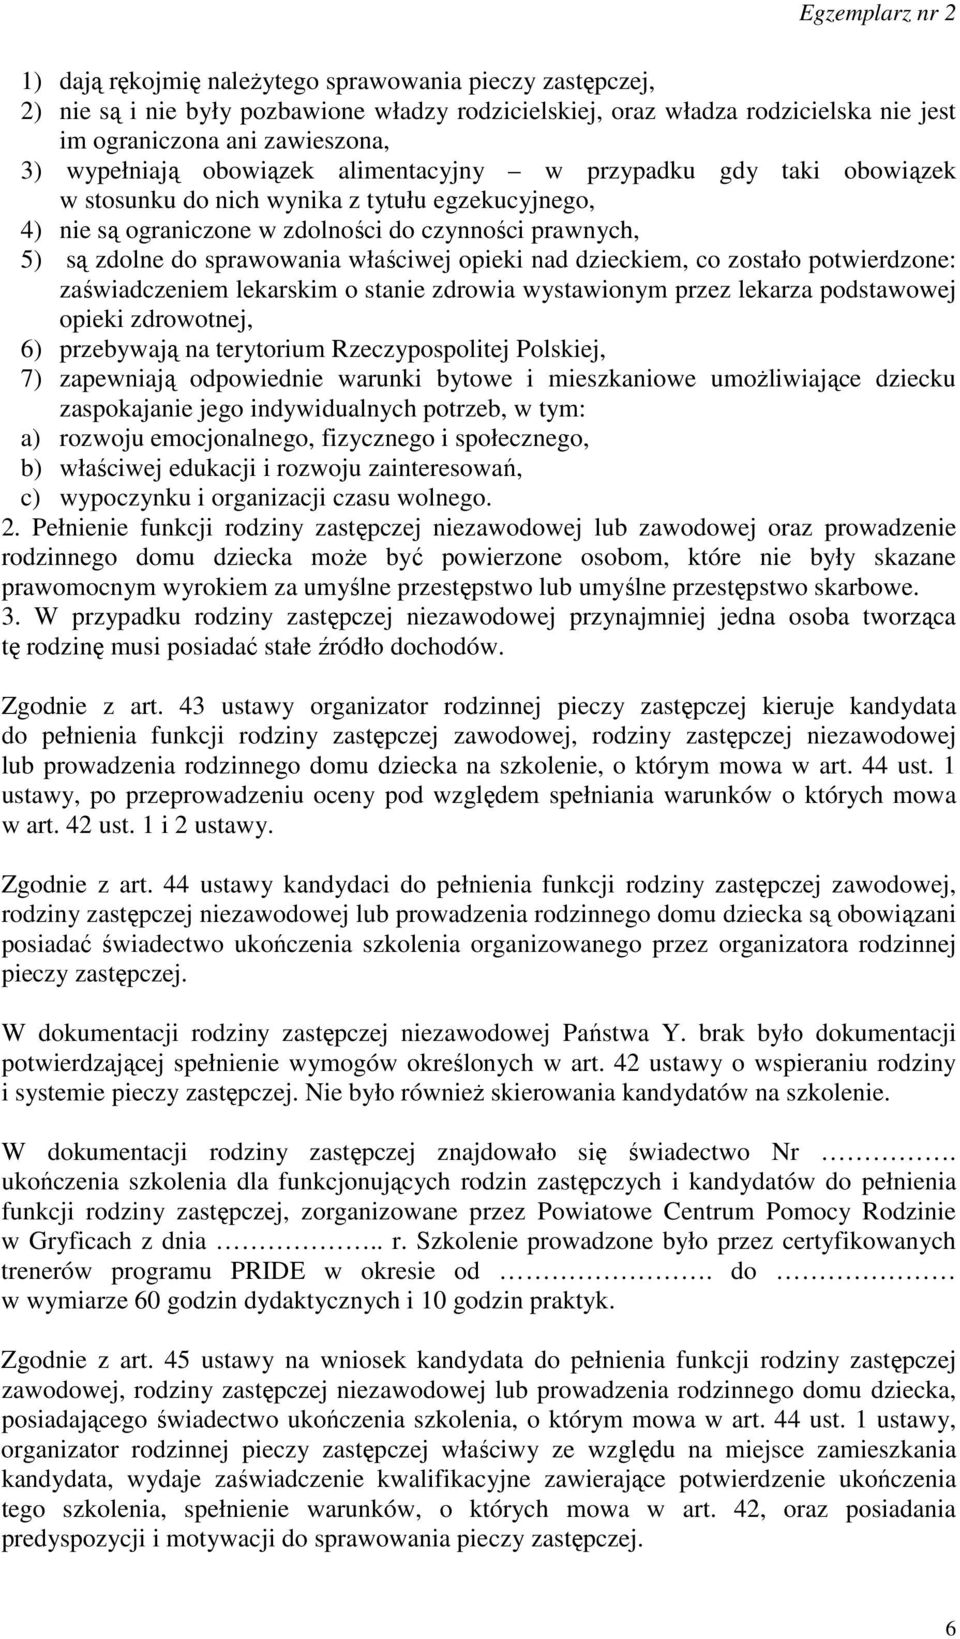 opieki nad dzieckiem, co zostało potwierdzone: zaświadczeniem lekarskim o stanie zdrowia wystawionym przez lekarza podstawowej opieki zdrowotnej, 6) przebywają na terytorium Rzeczypospolitej